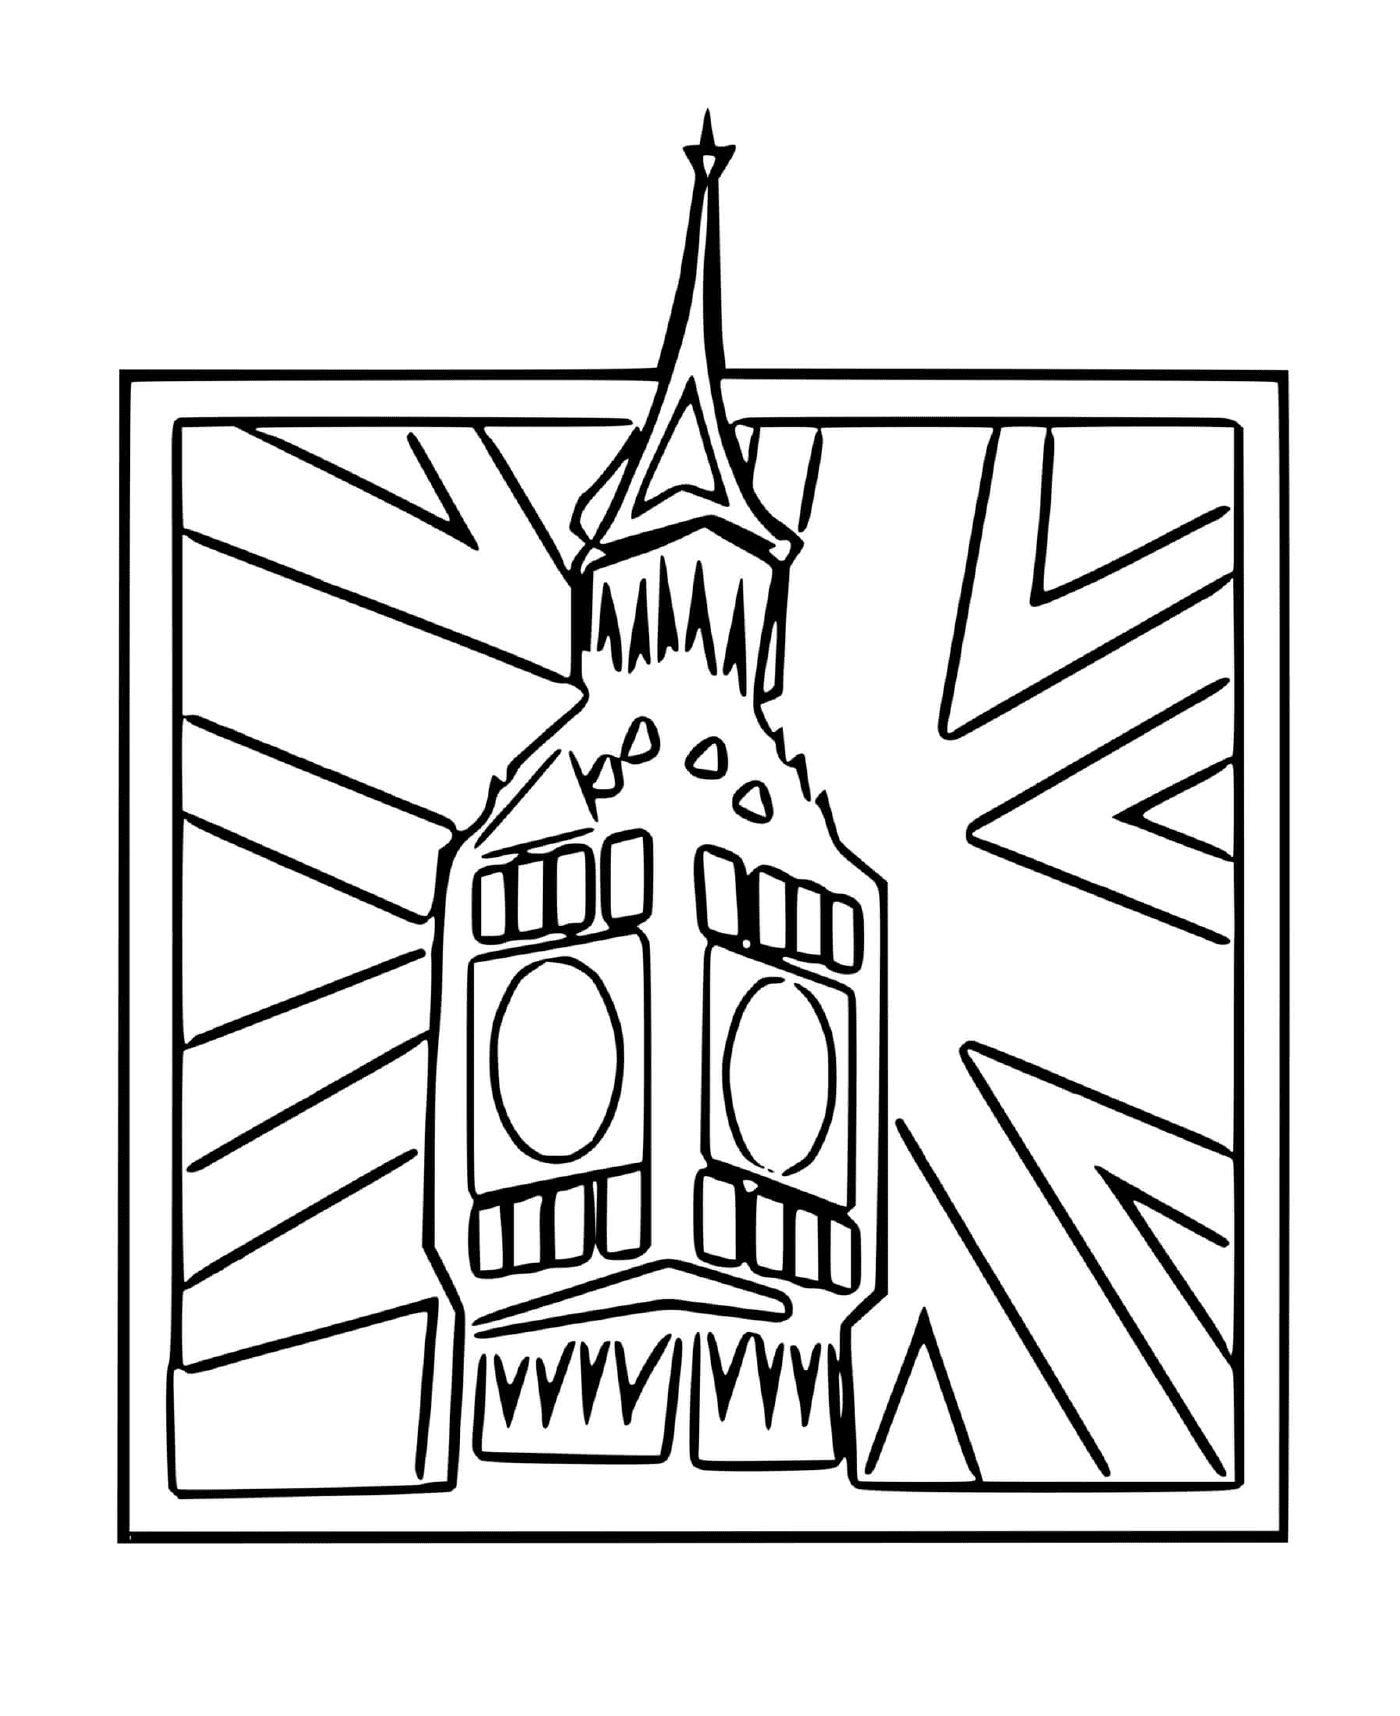  Big Ben Inghilterra orologio bandiera inglese 